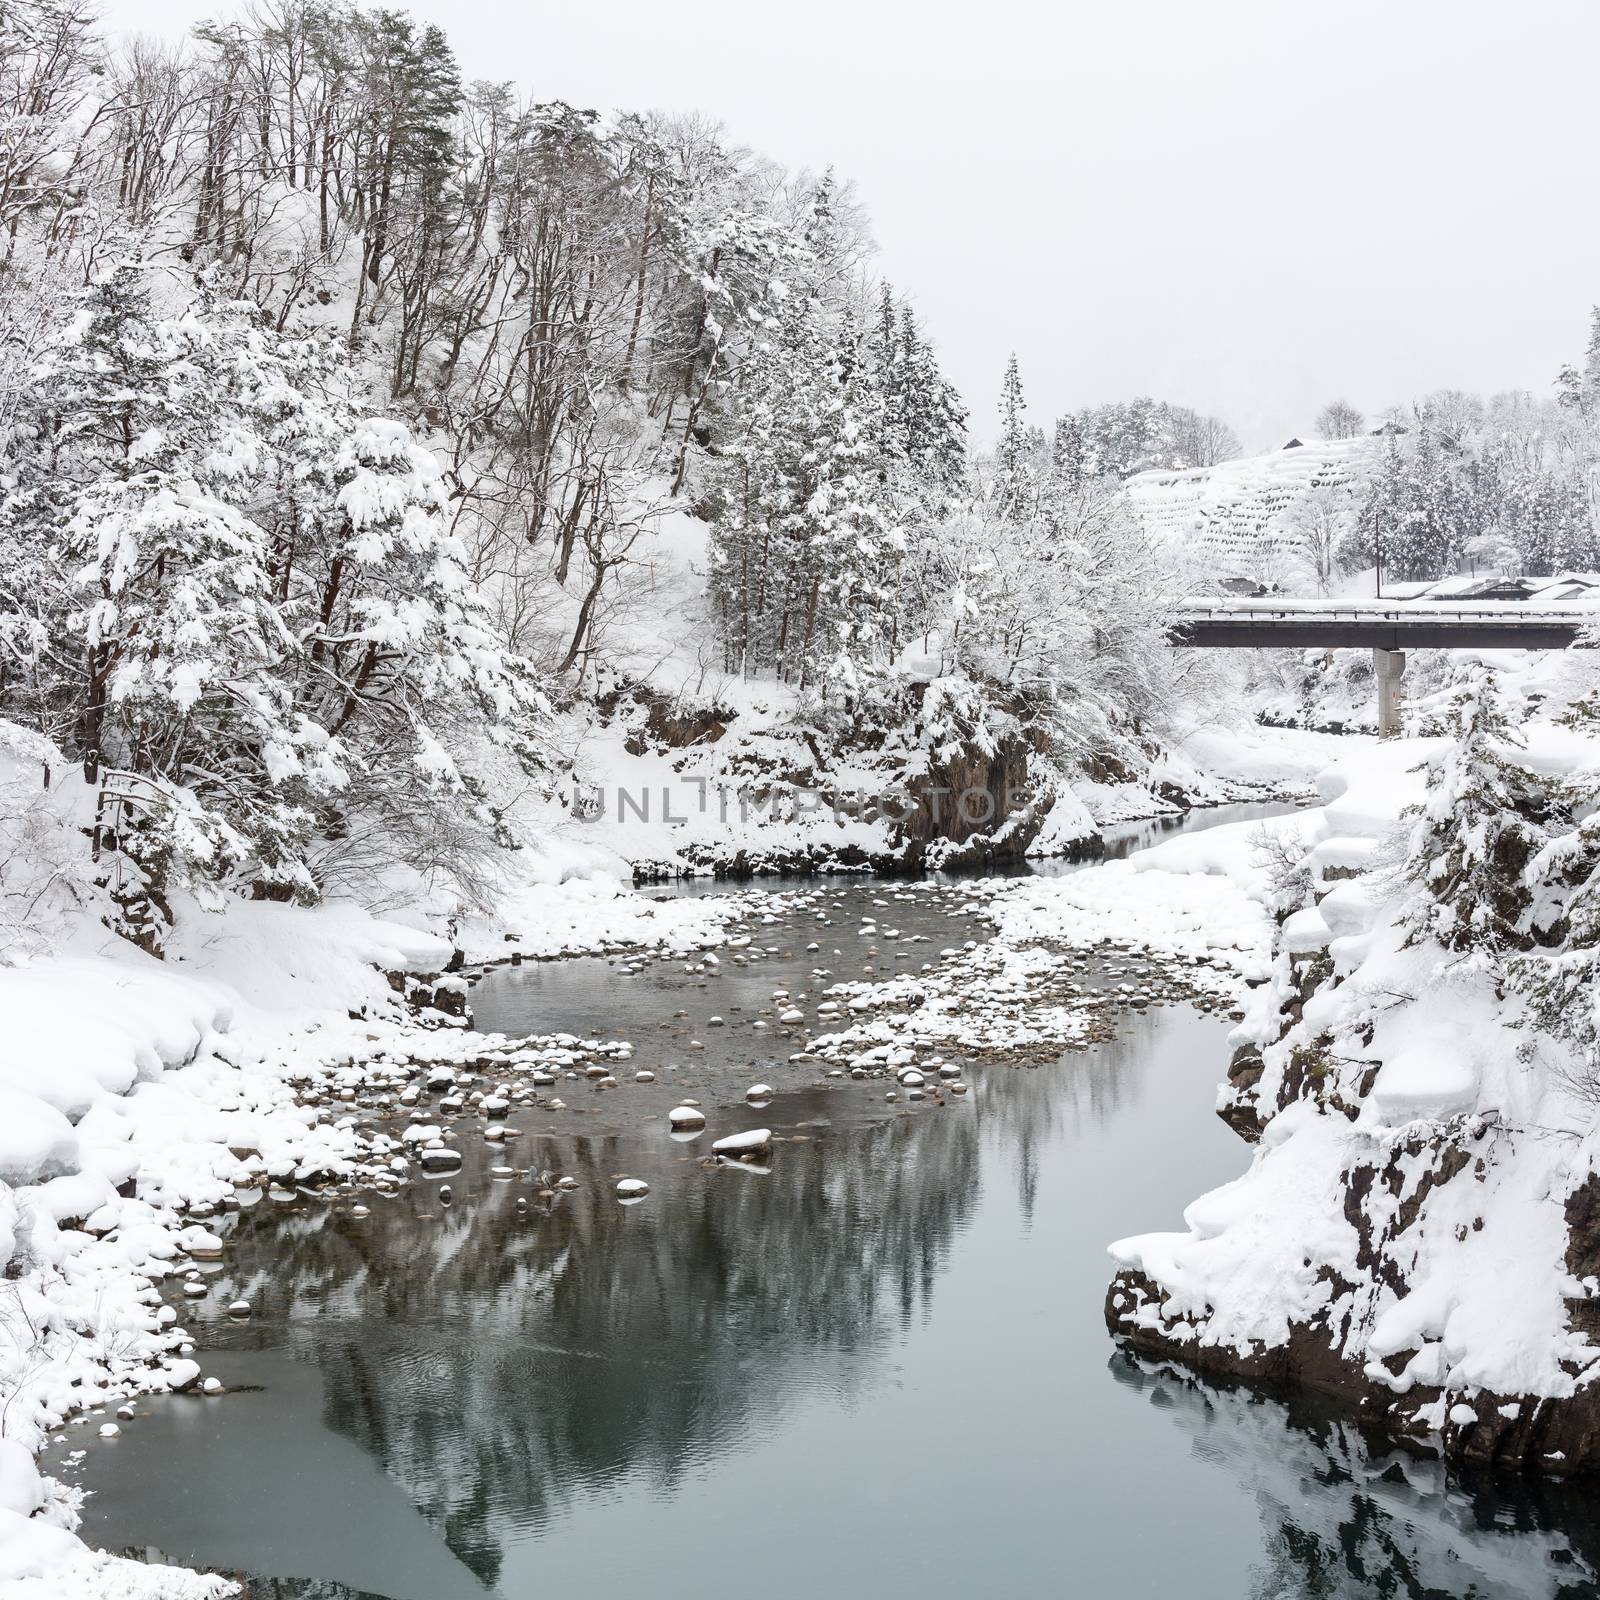 Shirakawago Japan Winter by vichie81